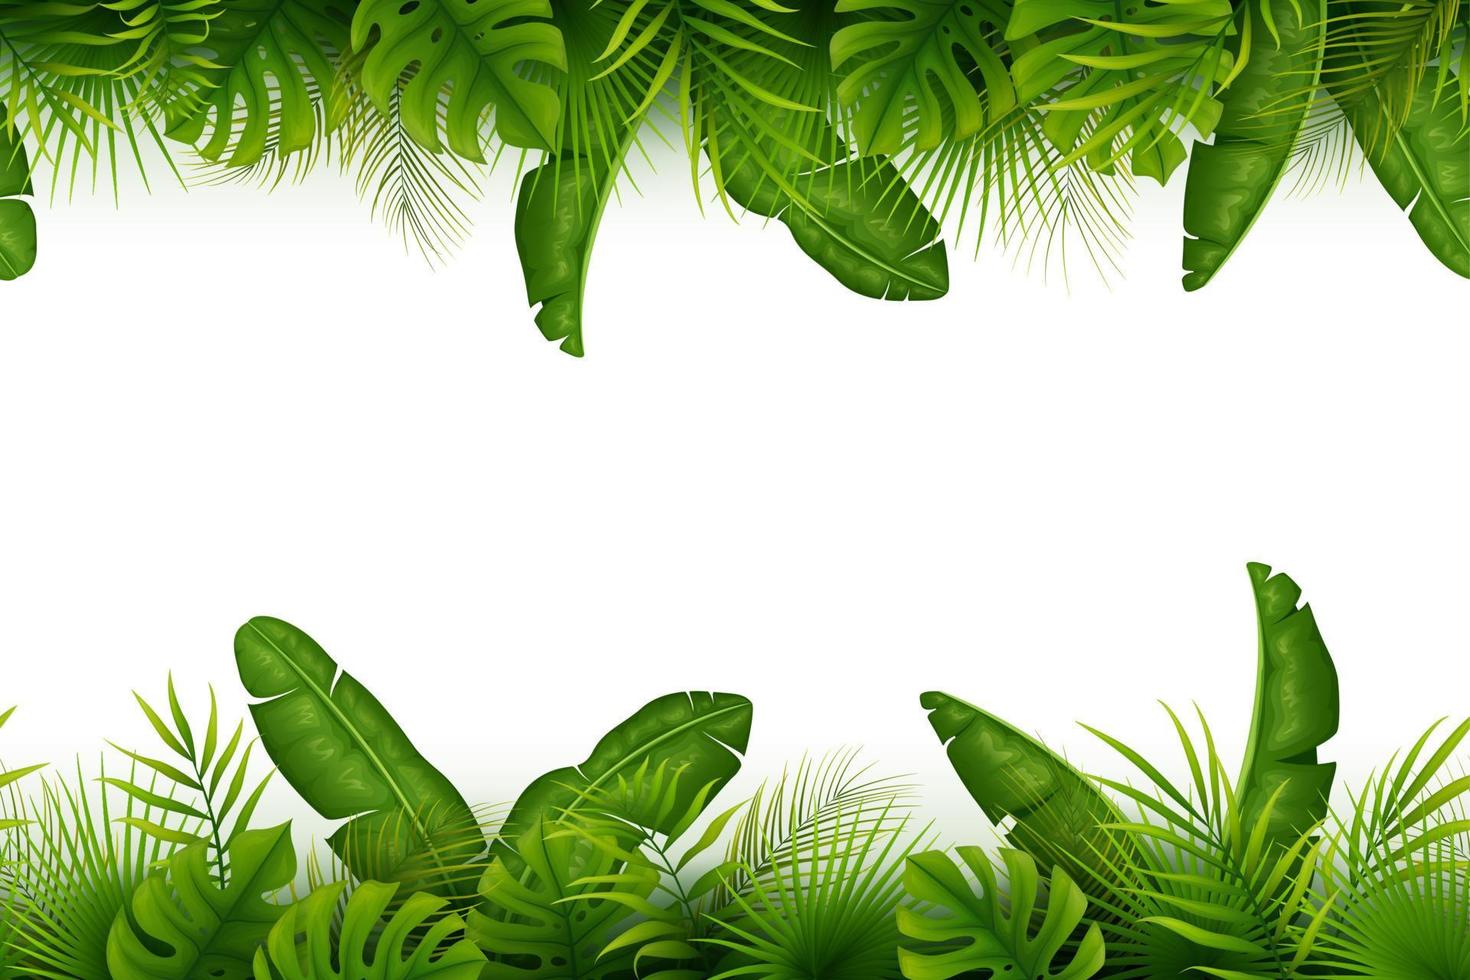 tropische jungle achtergrond met palmbomen en bladeren op witte achtergrond vector